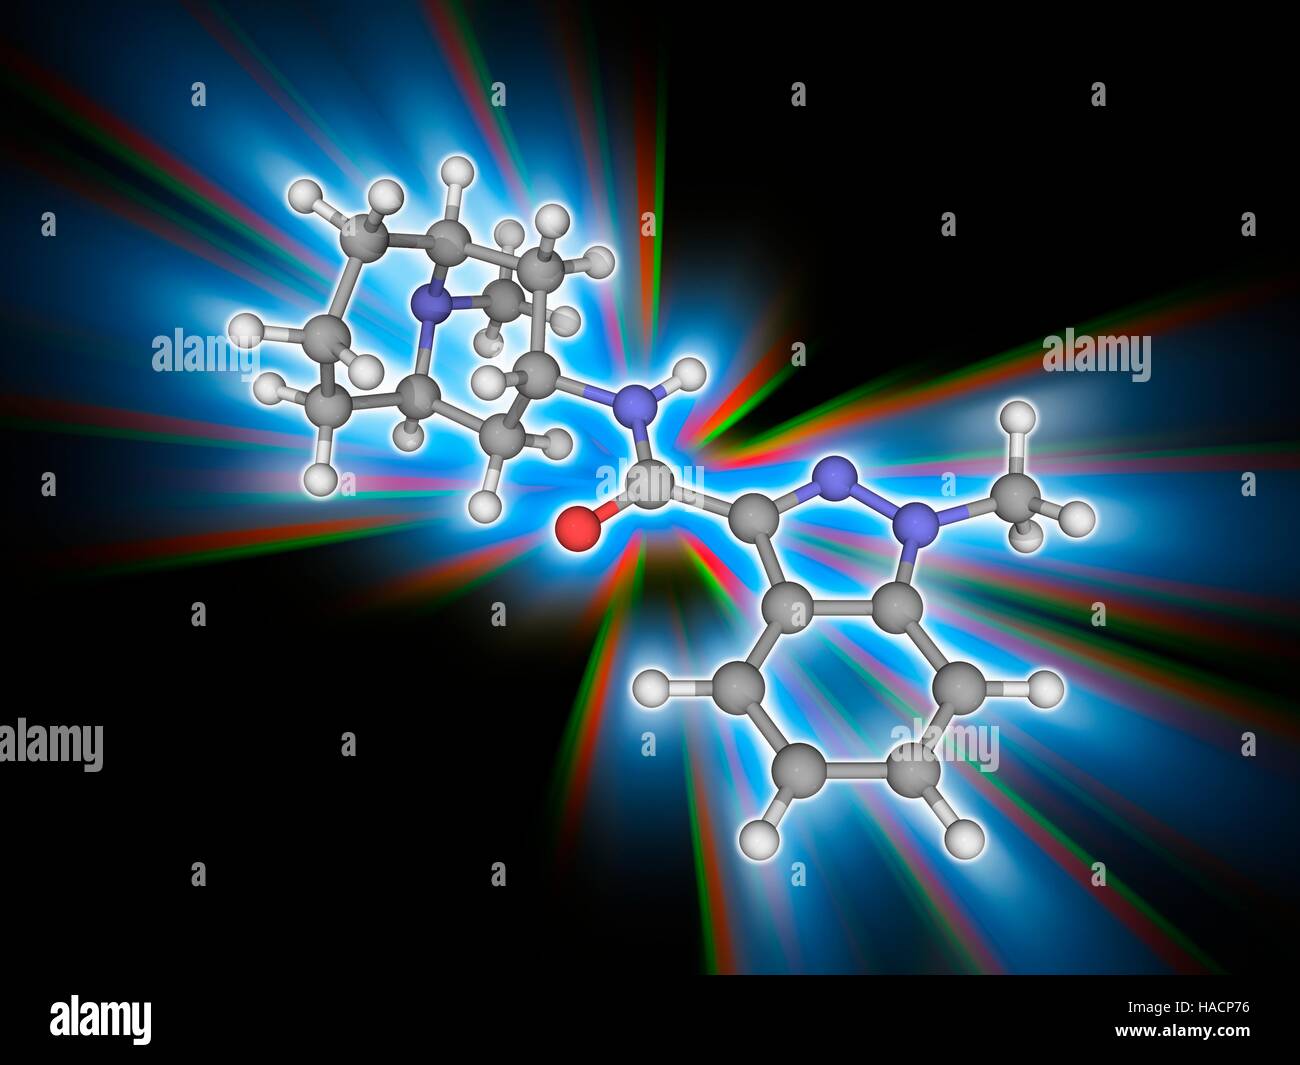 Granisetron. Molekulares Modell des Medikaments Granisetron (C18. H24. N4. (O), ein Serotonin-5-HT3-Rezeptor-Antagonisten zur Behandlung von Übelkeit und Erbrechen nach Chemotherapie. Atome als Kugeln dargestellt werden und sind farblich gekennzeichnet: Kohlenstoff (grau), Wasserstoff (weiß), Stickstoff (blau) und Sauerstoff (rot). Abbildung. Stockfoto